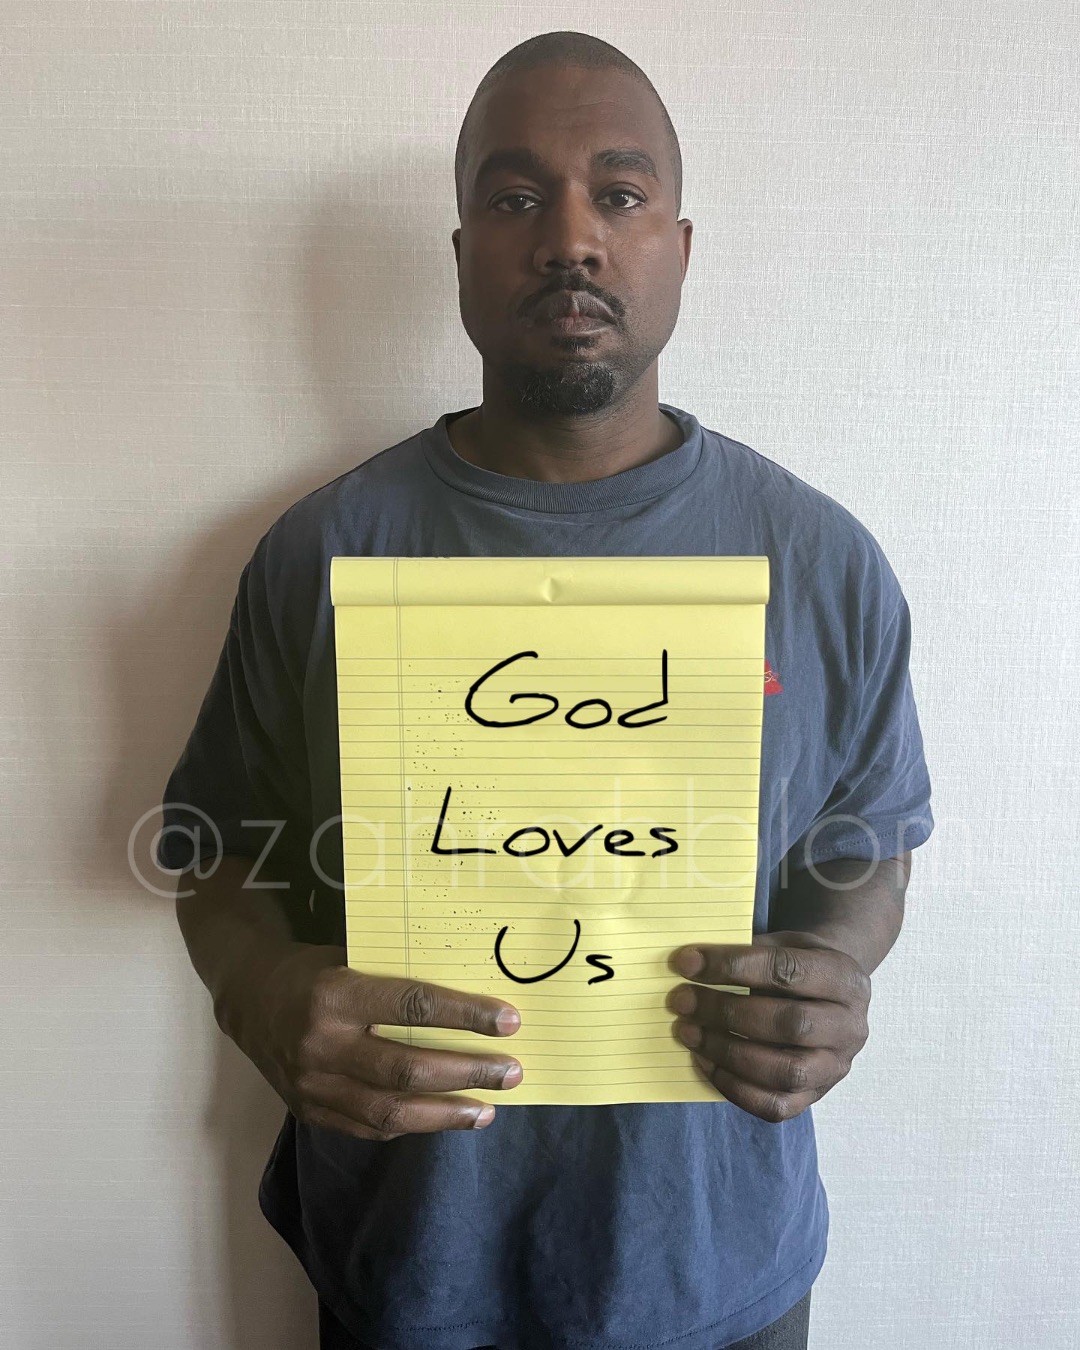 God 
Loves
Us